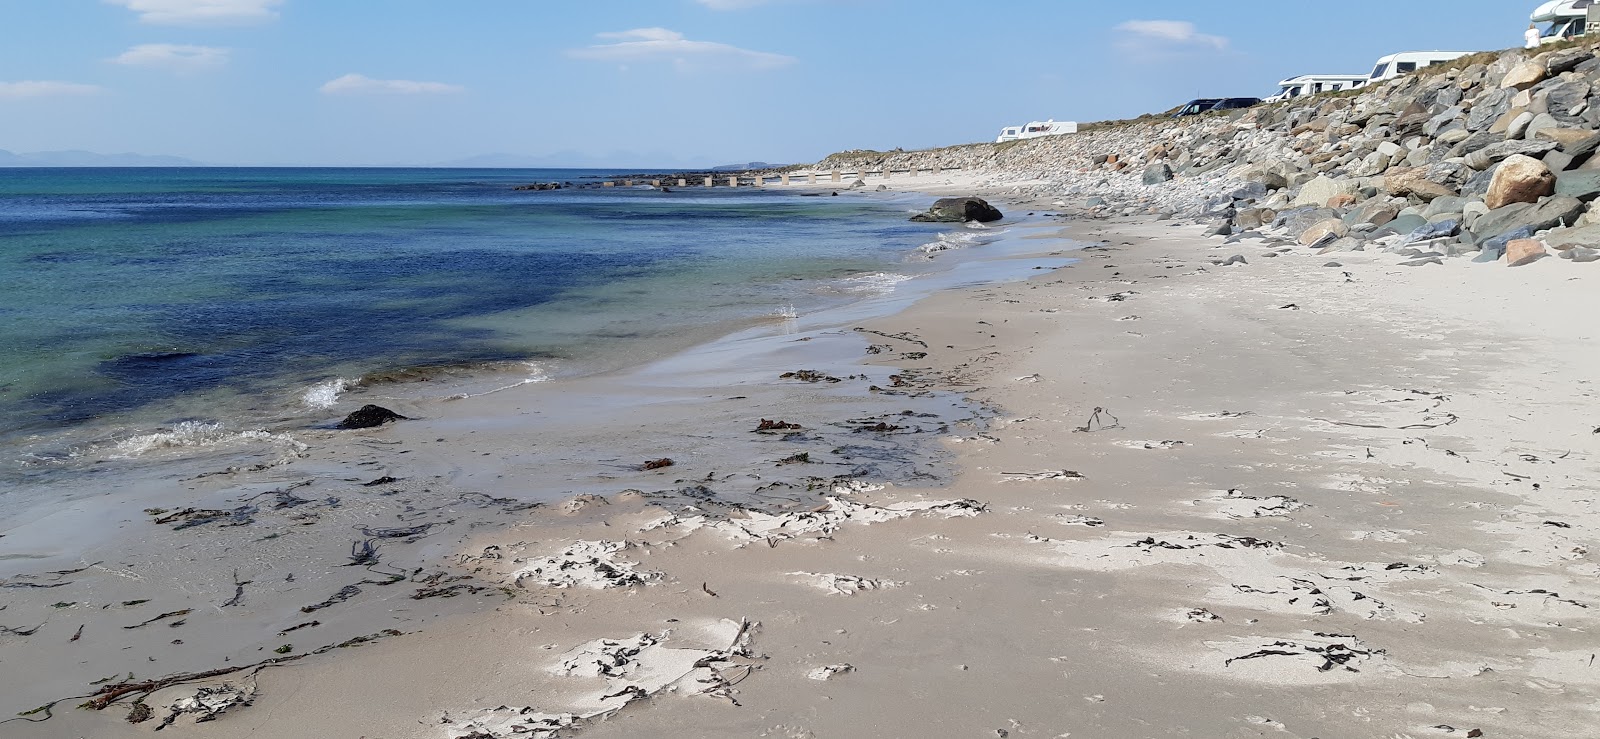 Zdjęcie Killegruer Beach - popularne miejsce wśród znawców relaksu